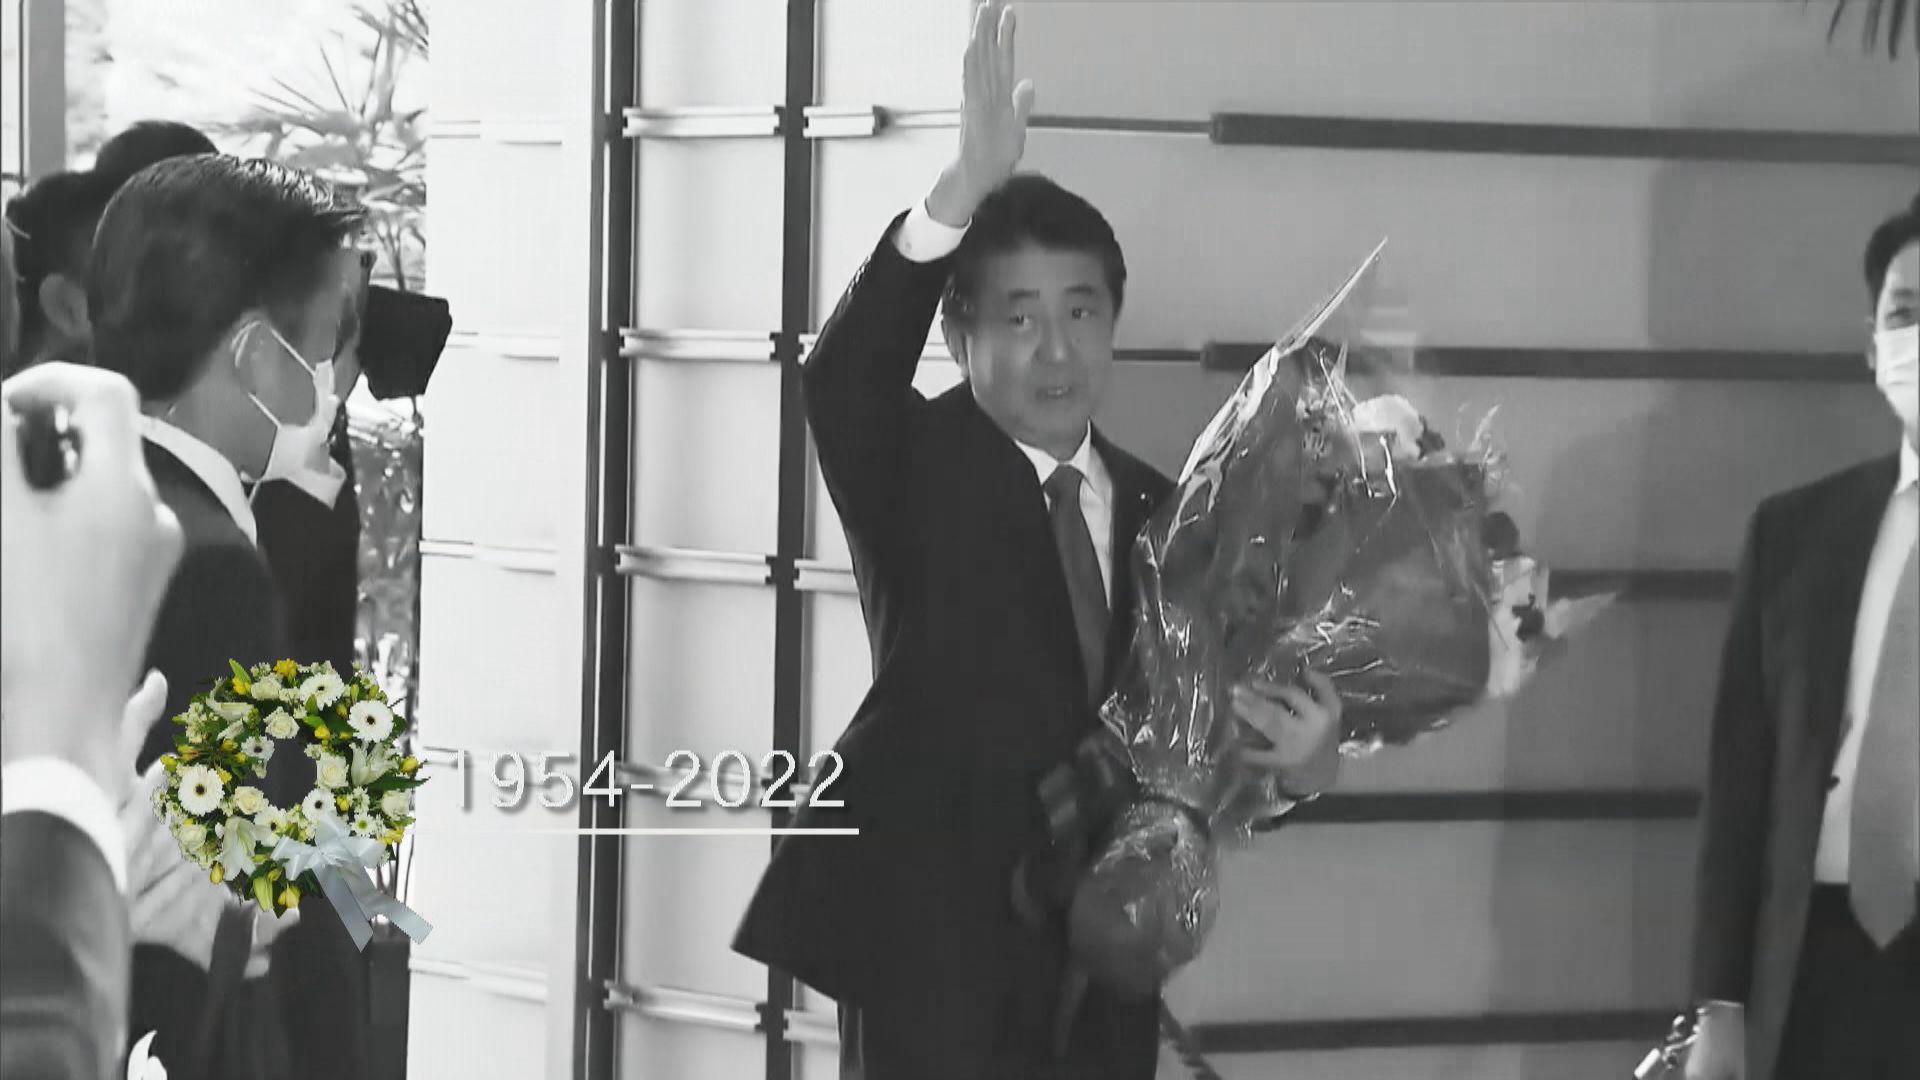 安倍晉三曾兩度出任日本首相